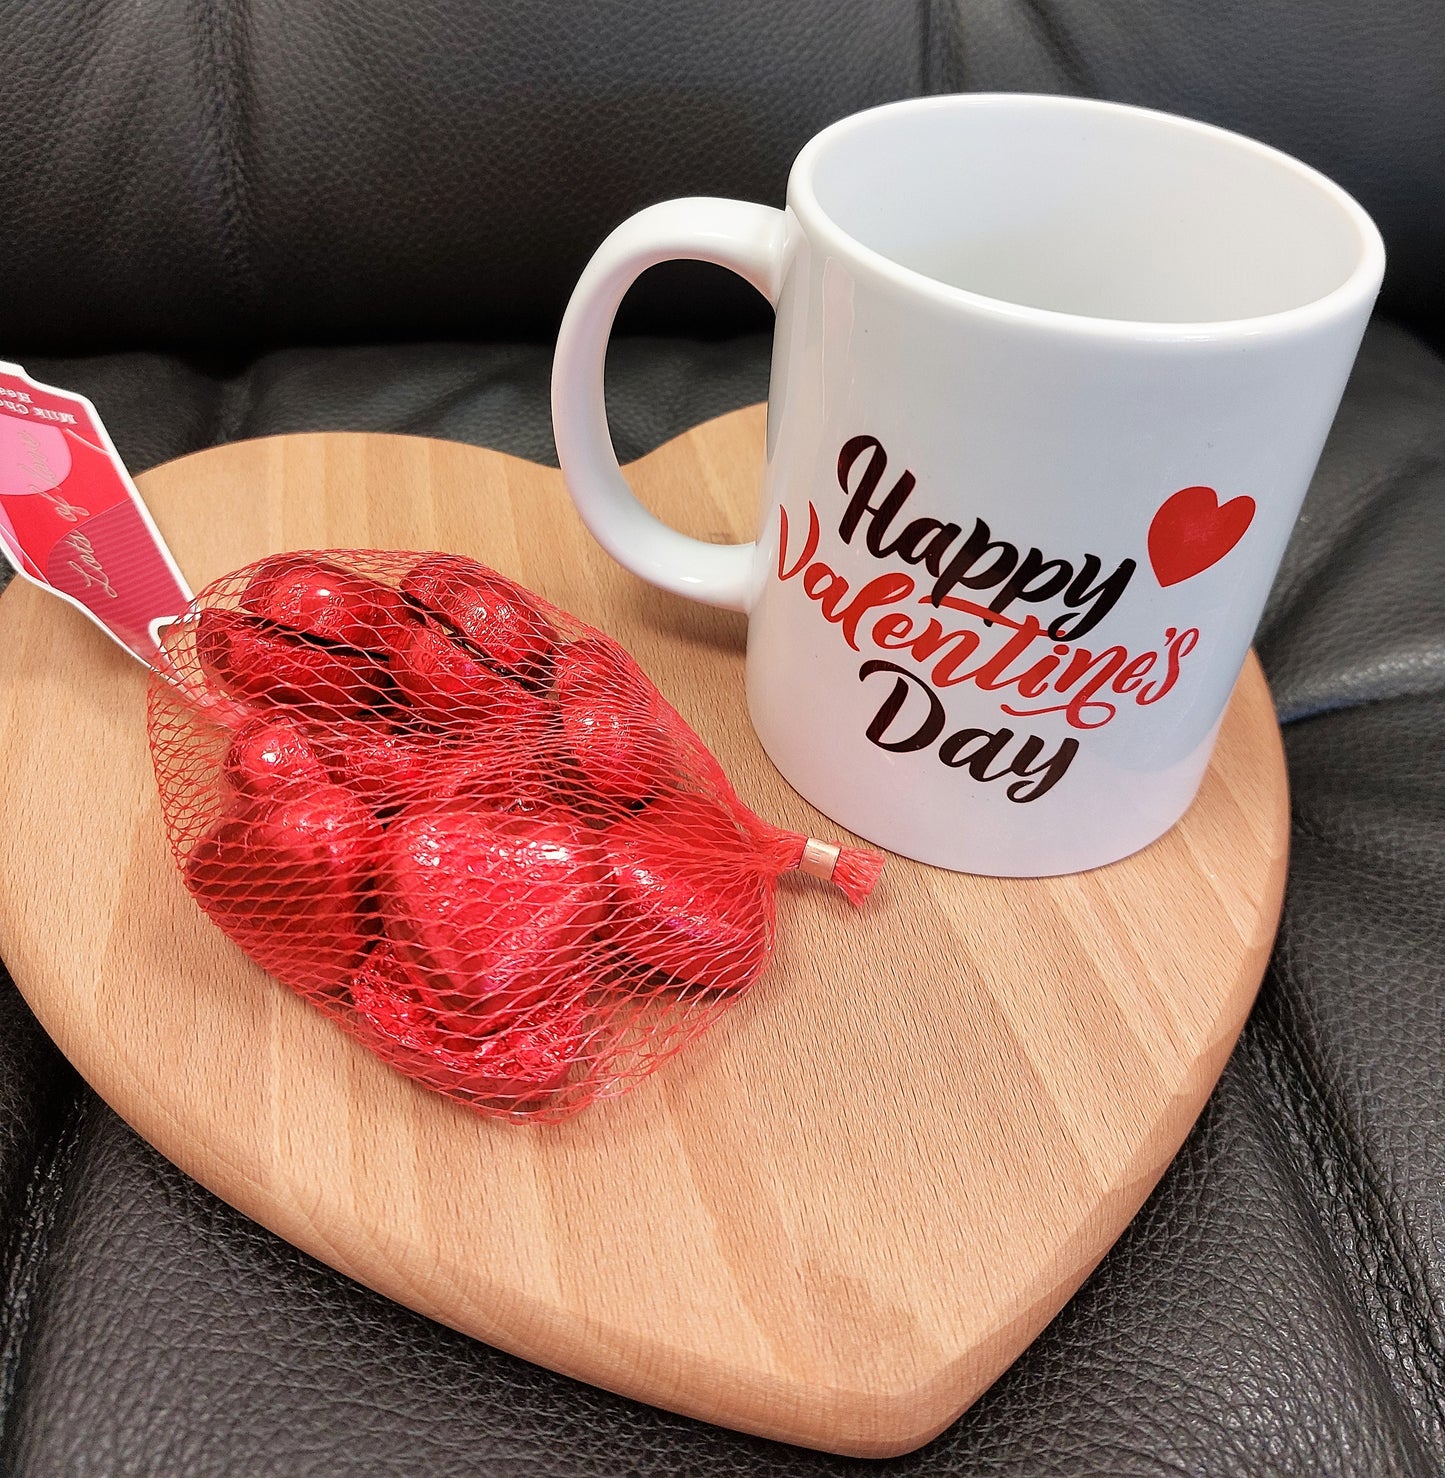 Valentine's Day Mug